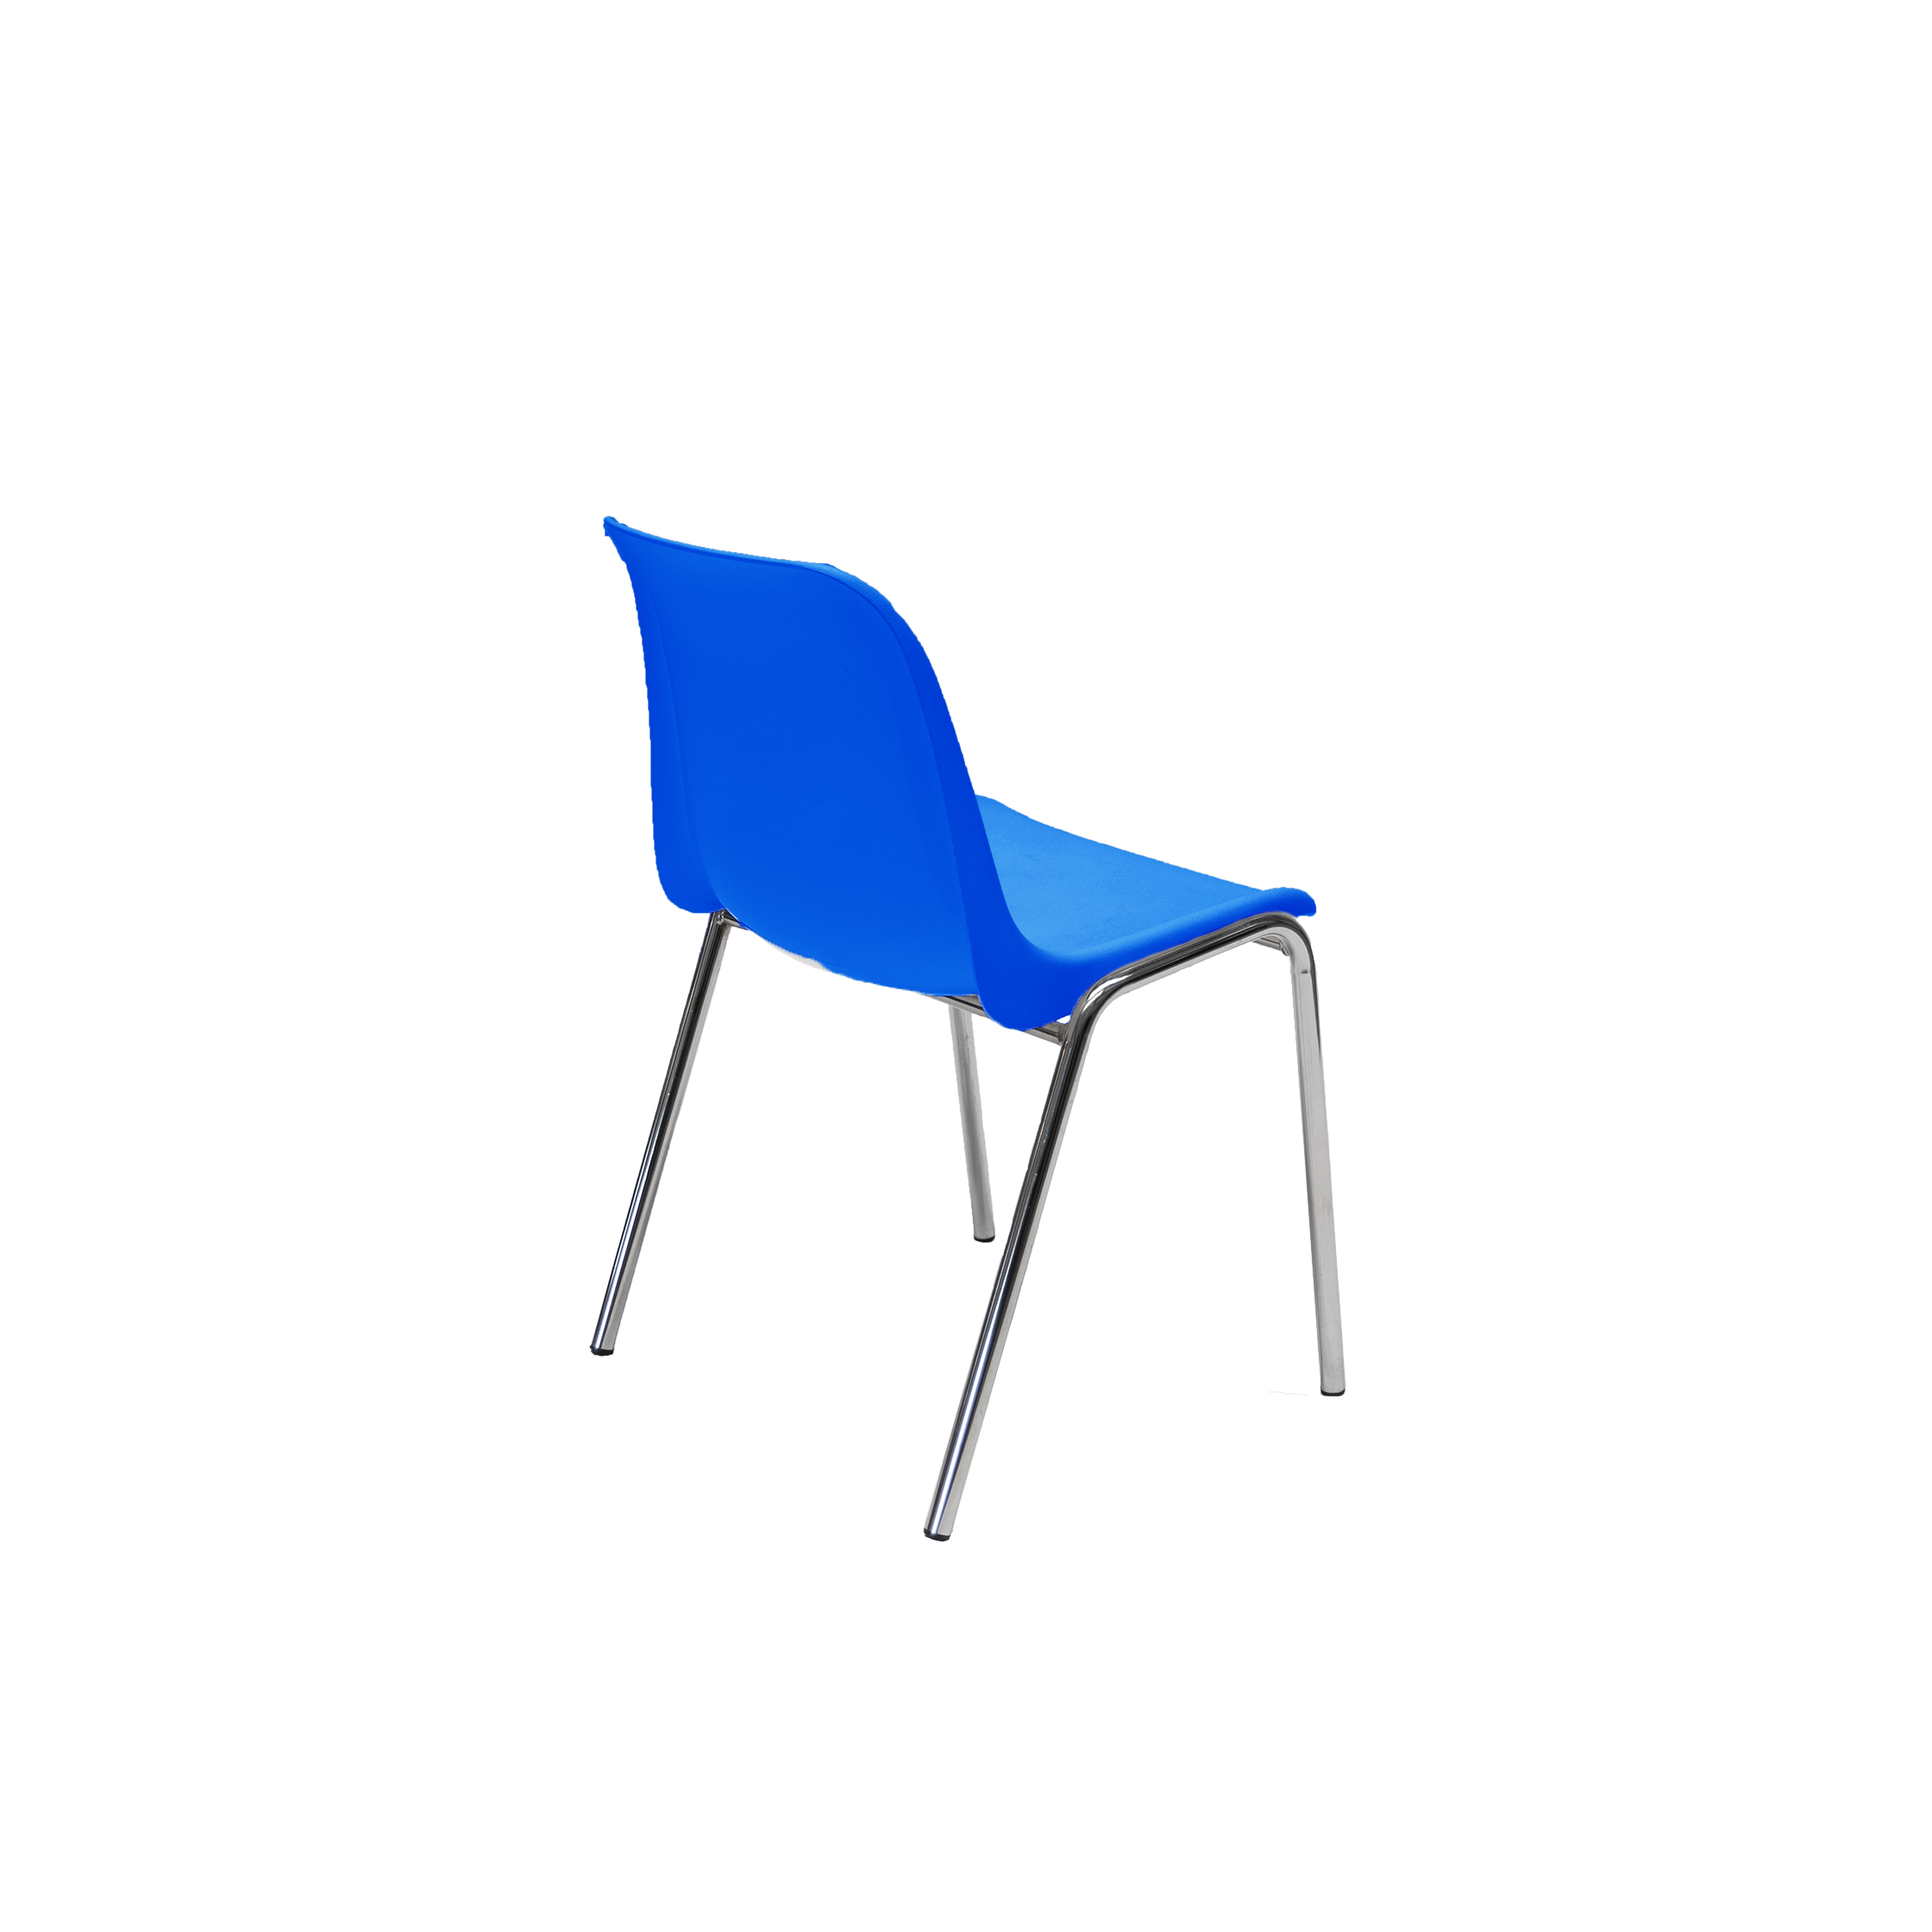 PVC canteen chair